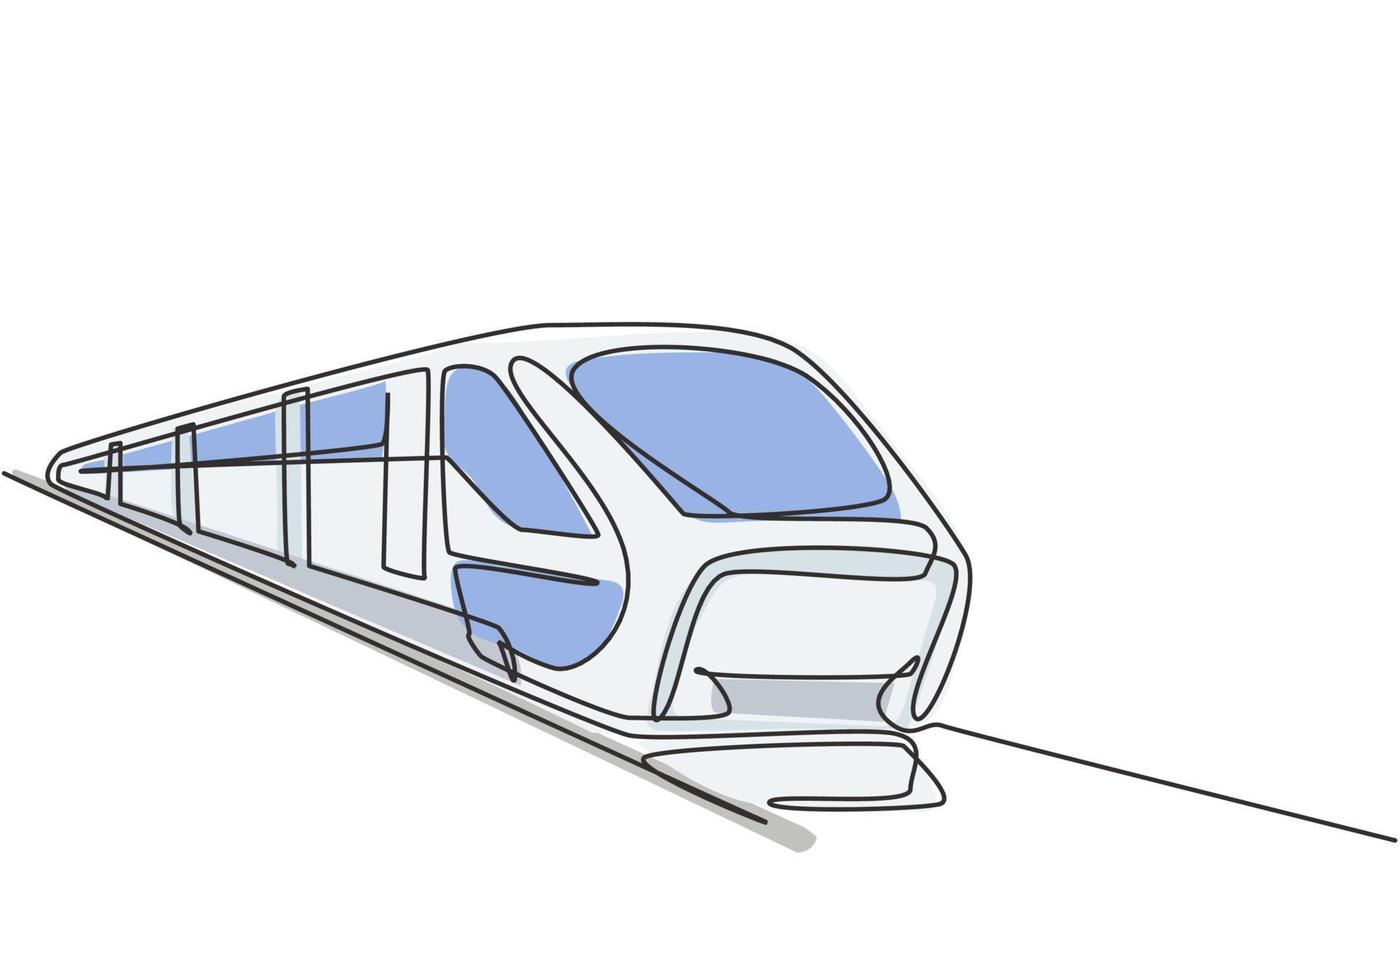 El dibujo de una sola línea del tren visto desde el frente se prepara para  llevar